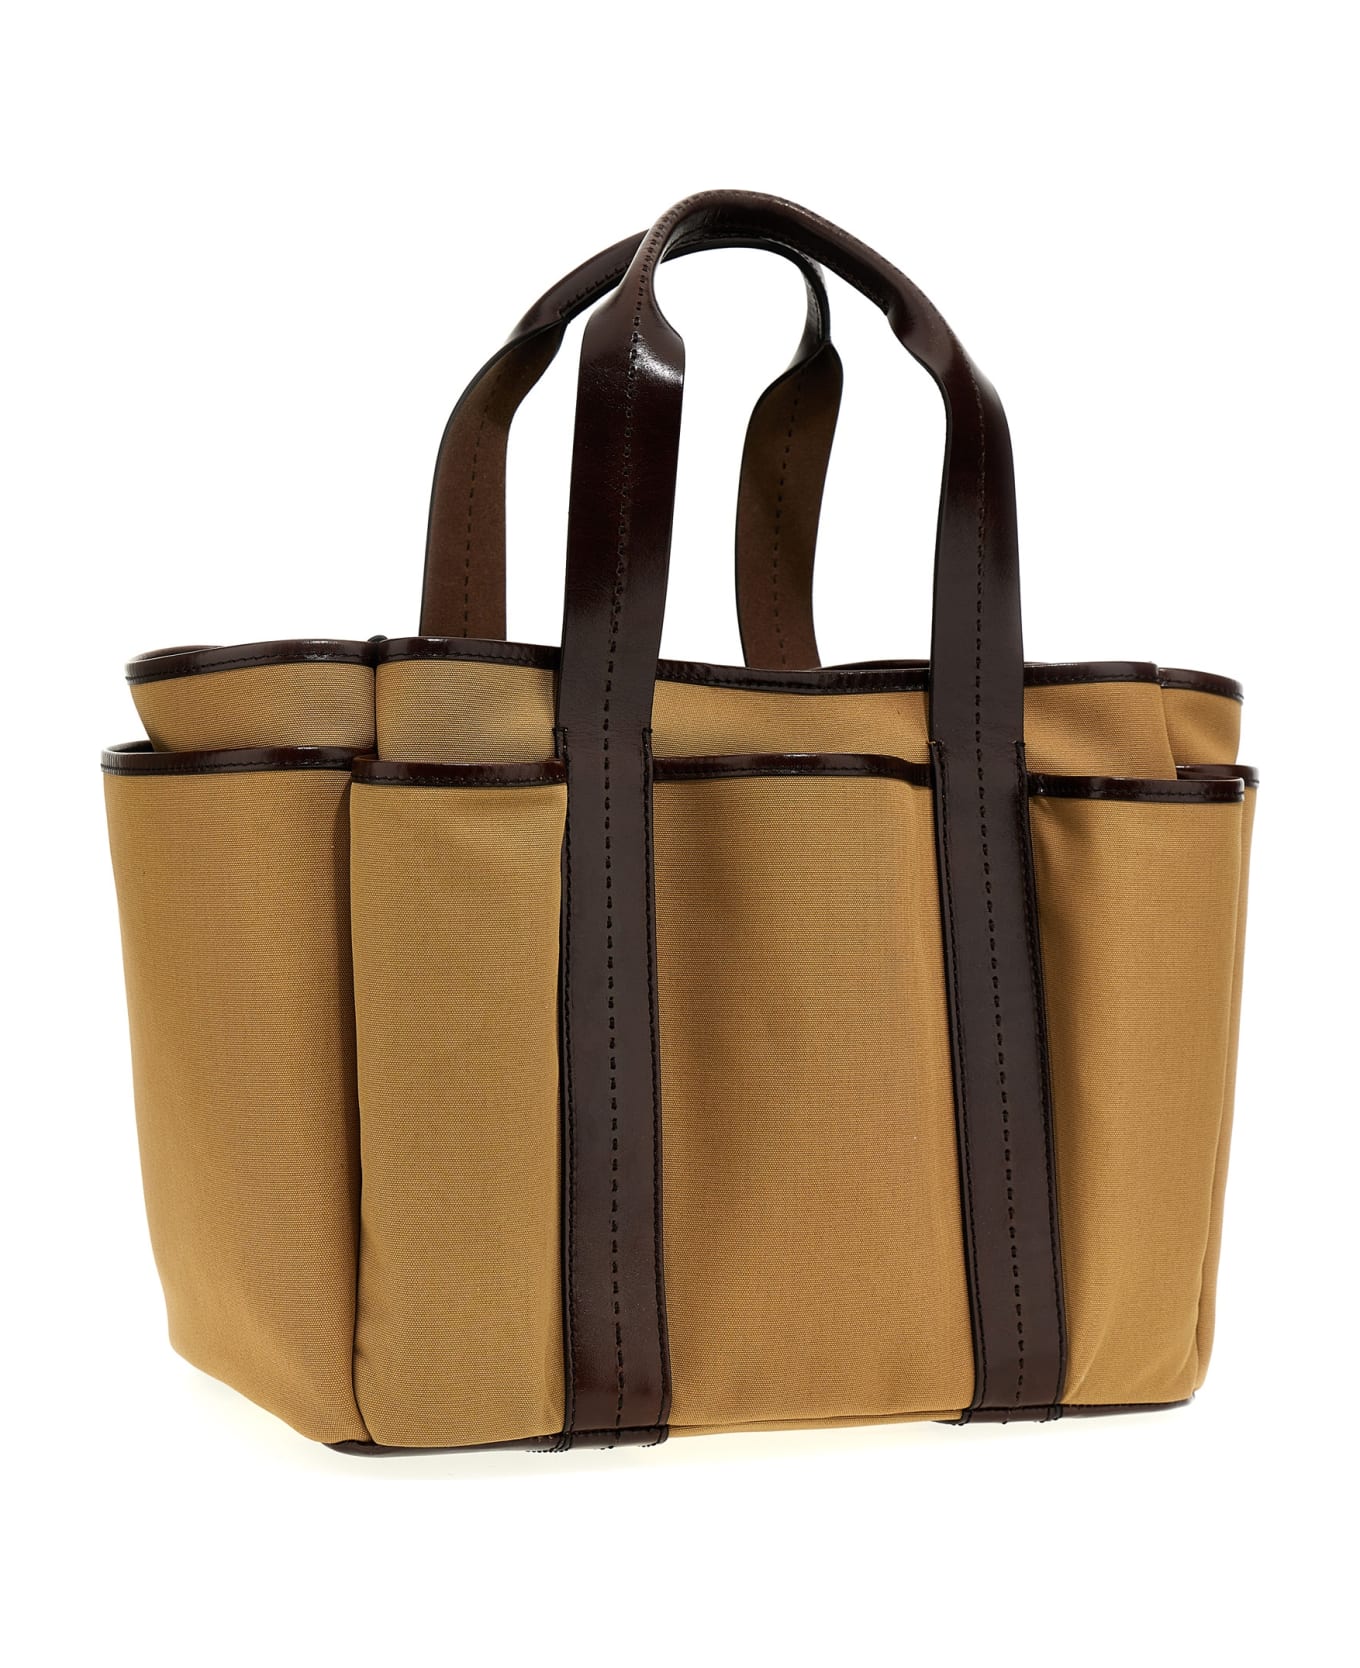 Max Mara 'garden' Shopping Bag - Brown トートバッグ